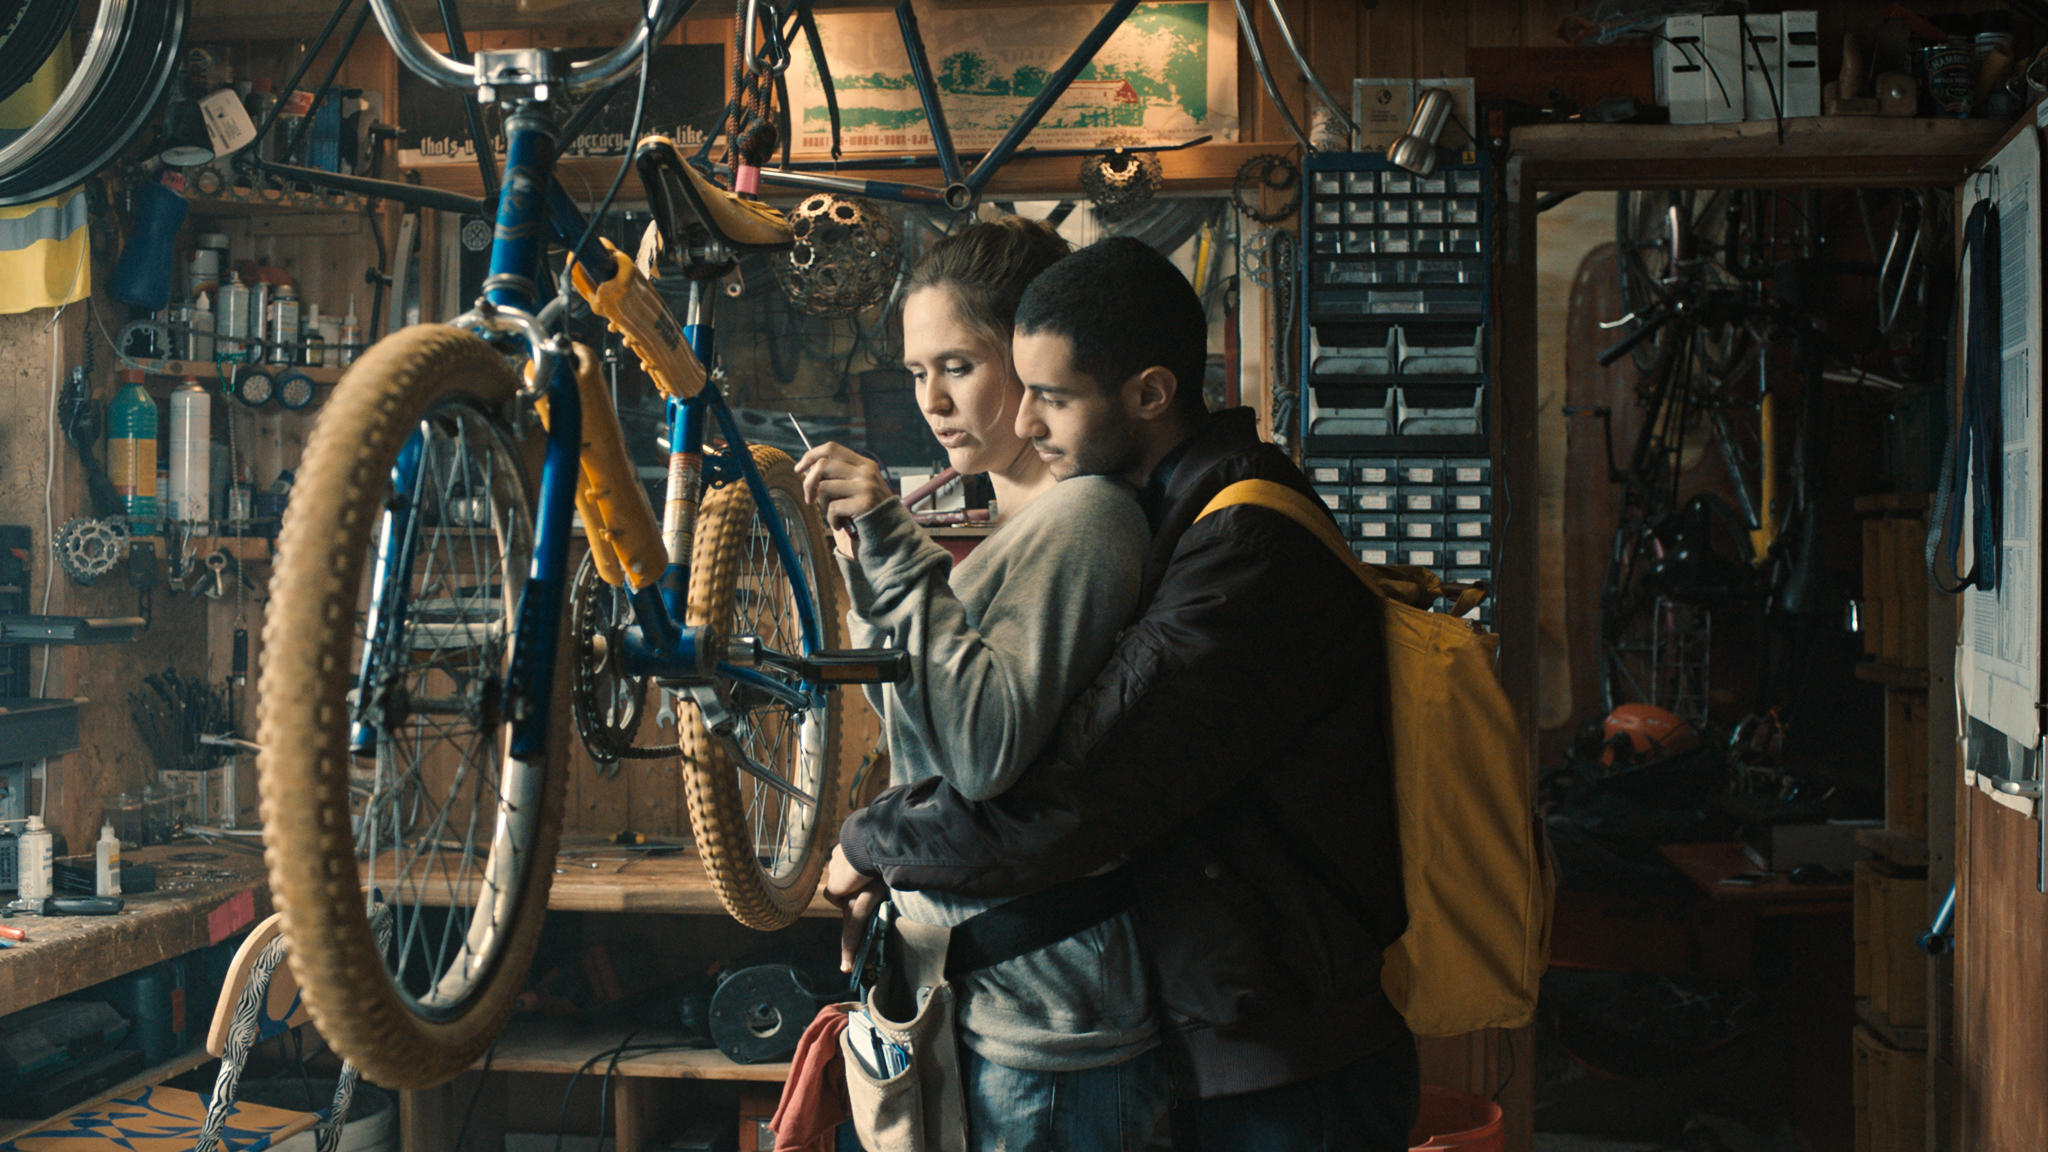 Karim umarmt Lilly in Nur ein Augenblick von hinten, während sie in ihrer Werkstatt gerade ein Fahrrad repariert.